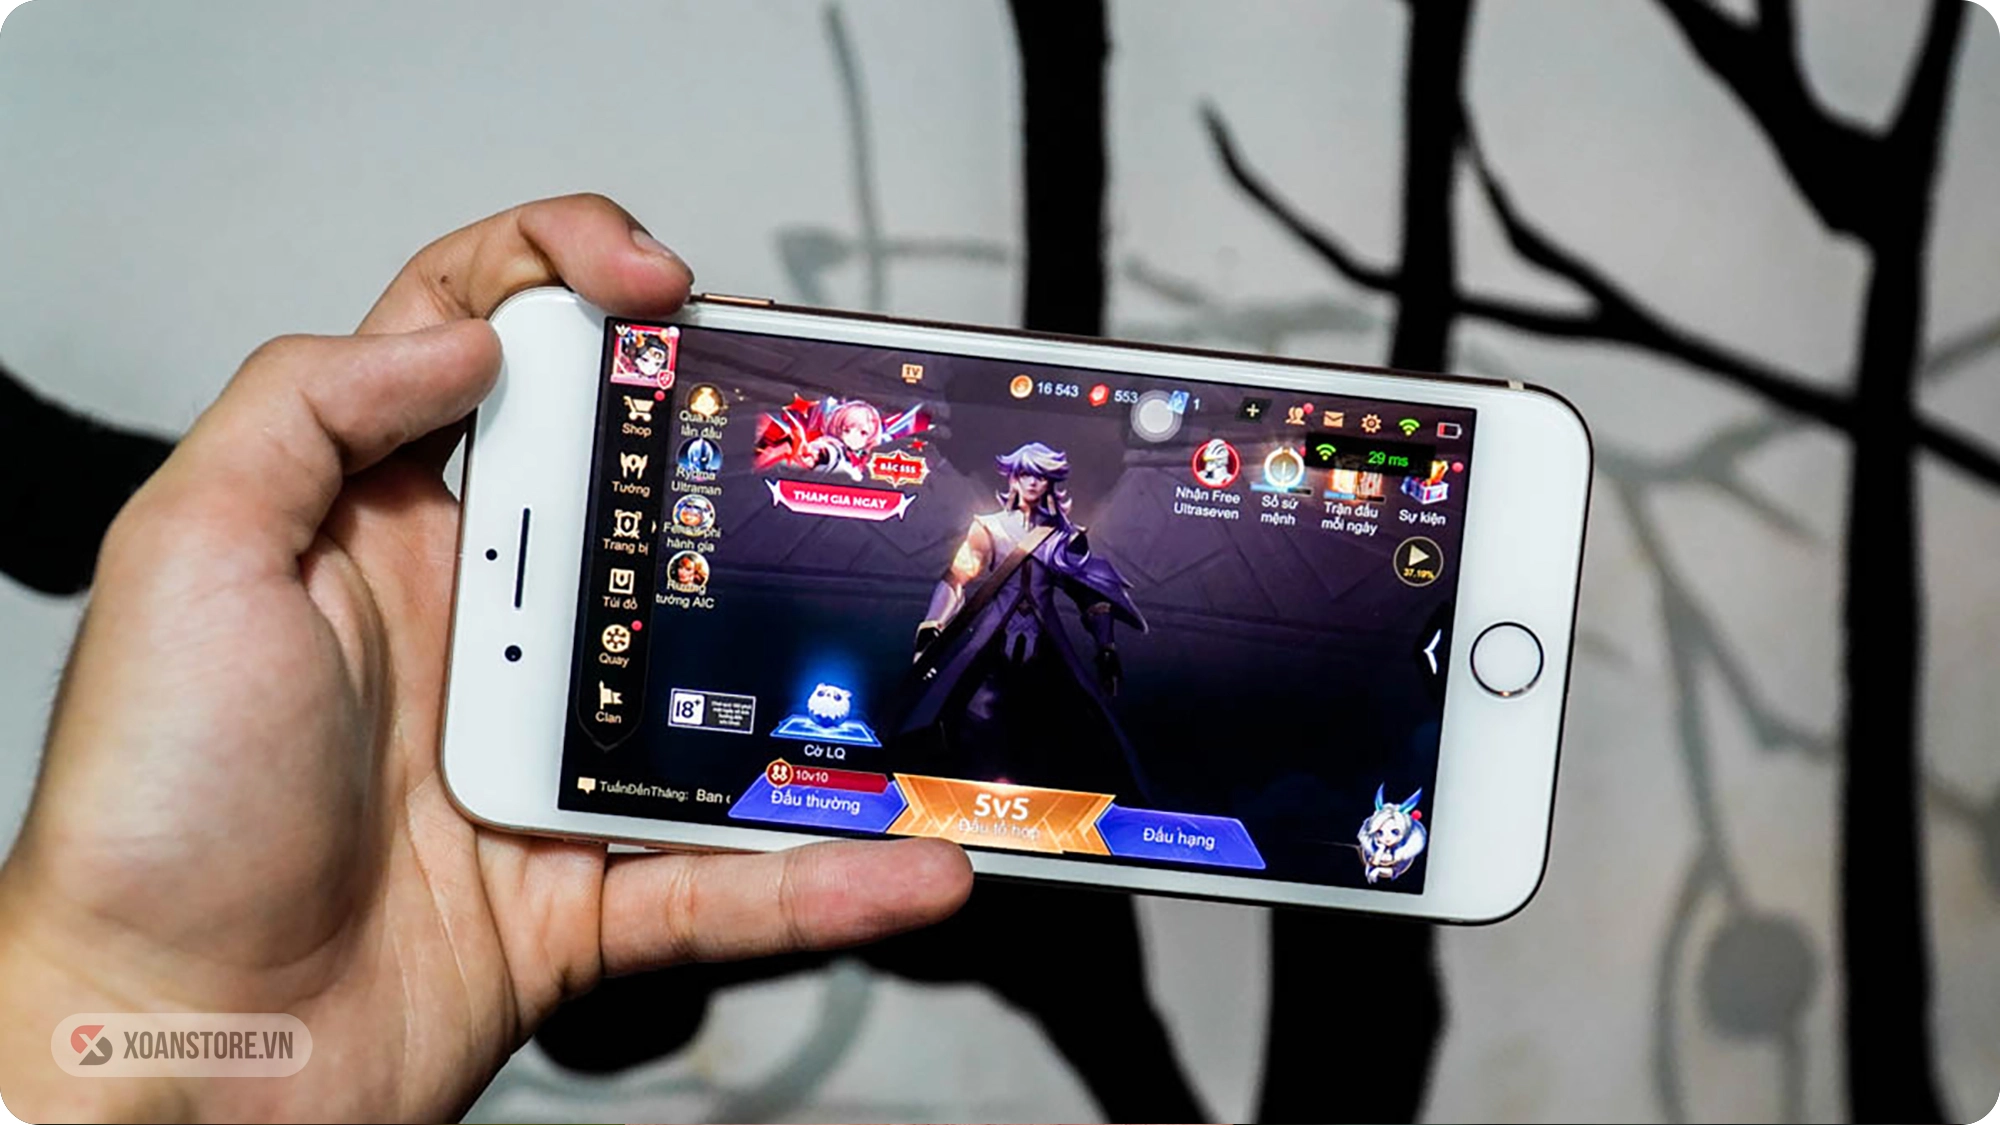 iPhone 6s 32GB cũ giá rẻ, trả góp 0%, bảo hành 12 Tháng | Xoanstore.vn